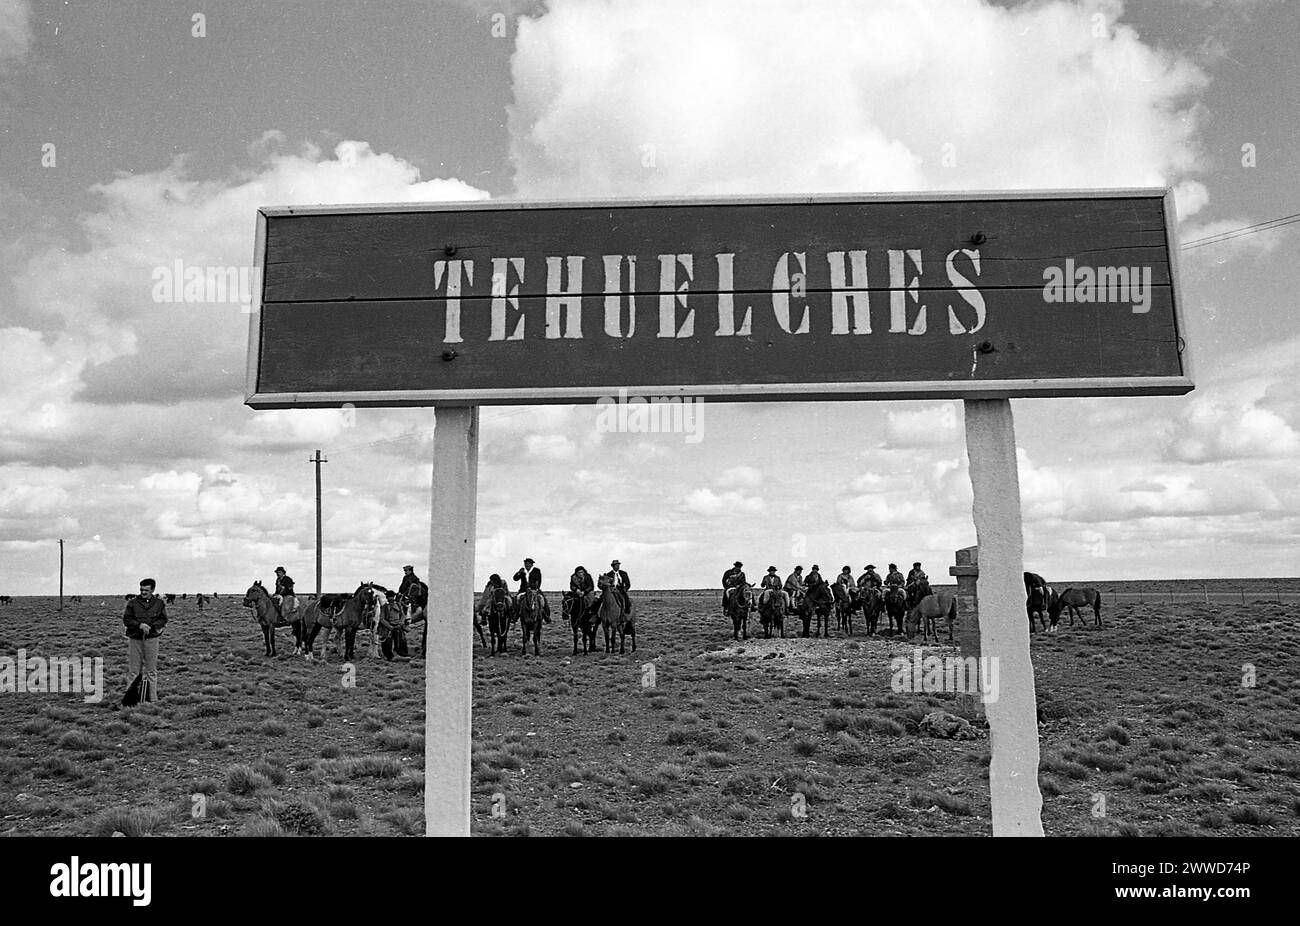 Tehuelches es una estación de ferrocarril patagónica (1914-1978) cerca de Deseado, provincia de Santa Cruz, Argentina. Fue utilizado como locación durante el rodaje de la película 'La Patagonia Rebelde' dirigida por Héctor Olivera, enero de 1974. Foto de stock